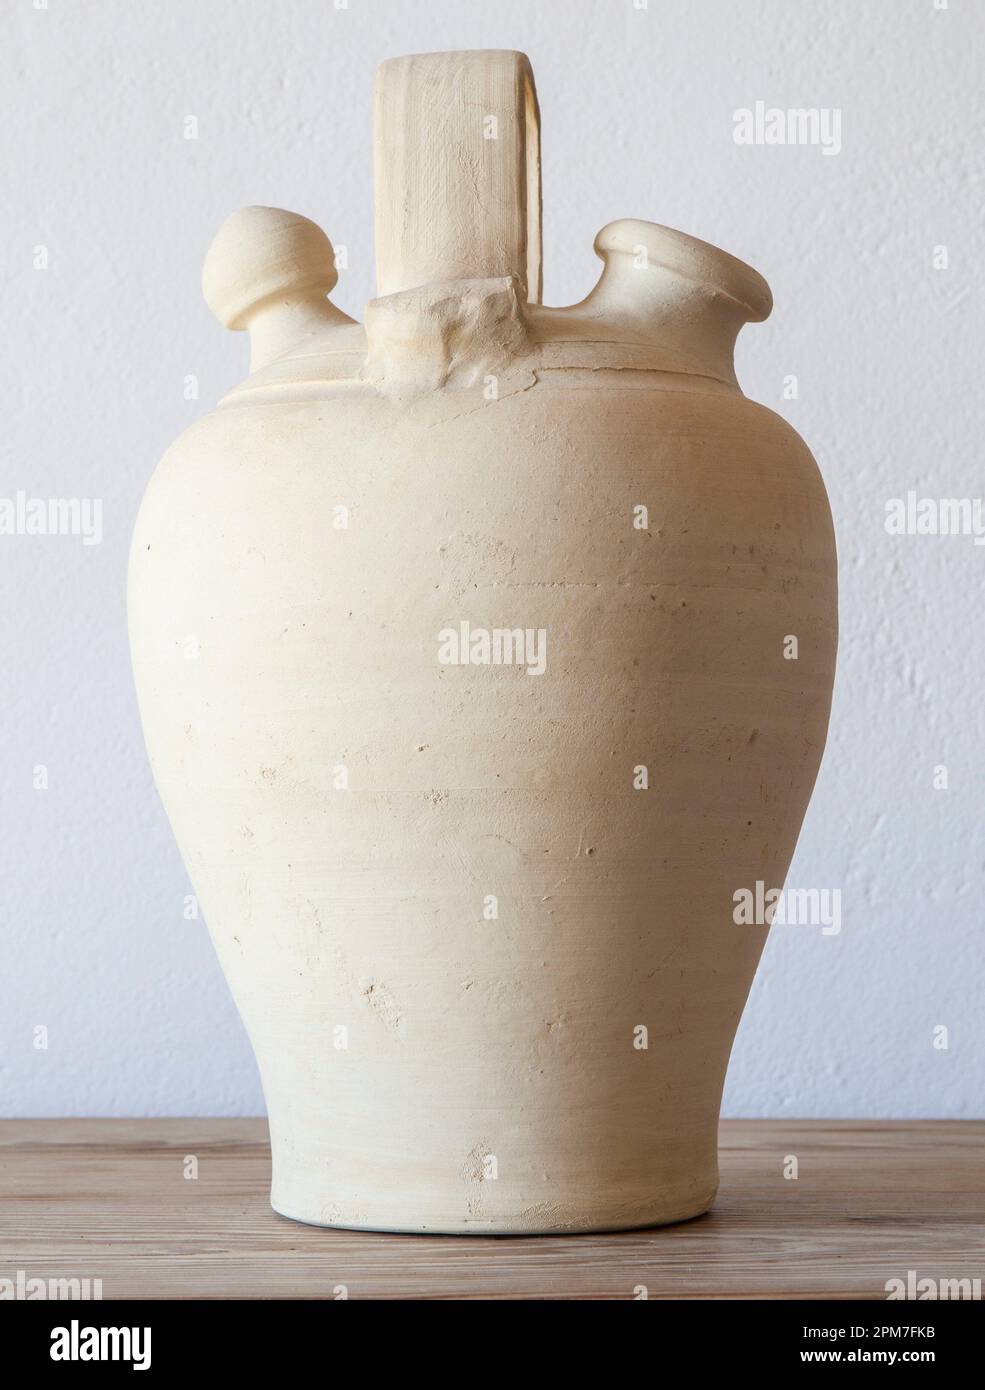 Botijo de barro blanco, jarra tradicional de barro para mantener el agua fresca. Enfoque selectivo. Foto de stock